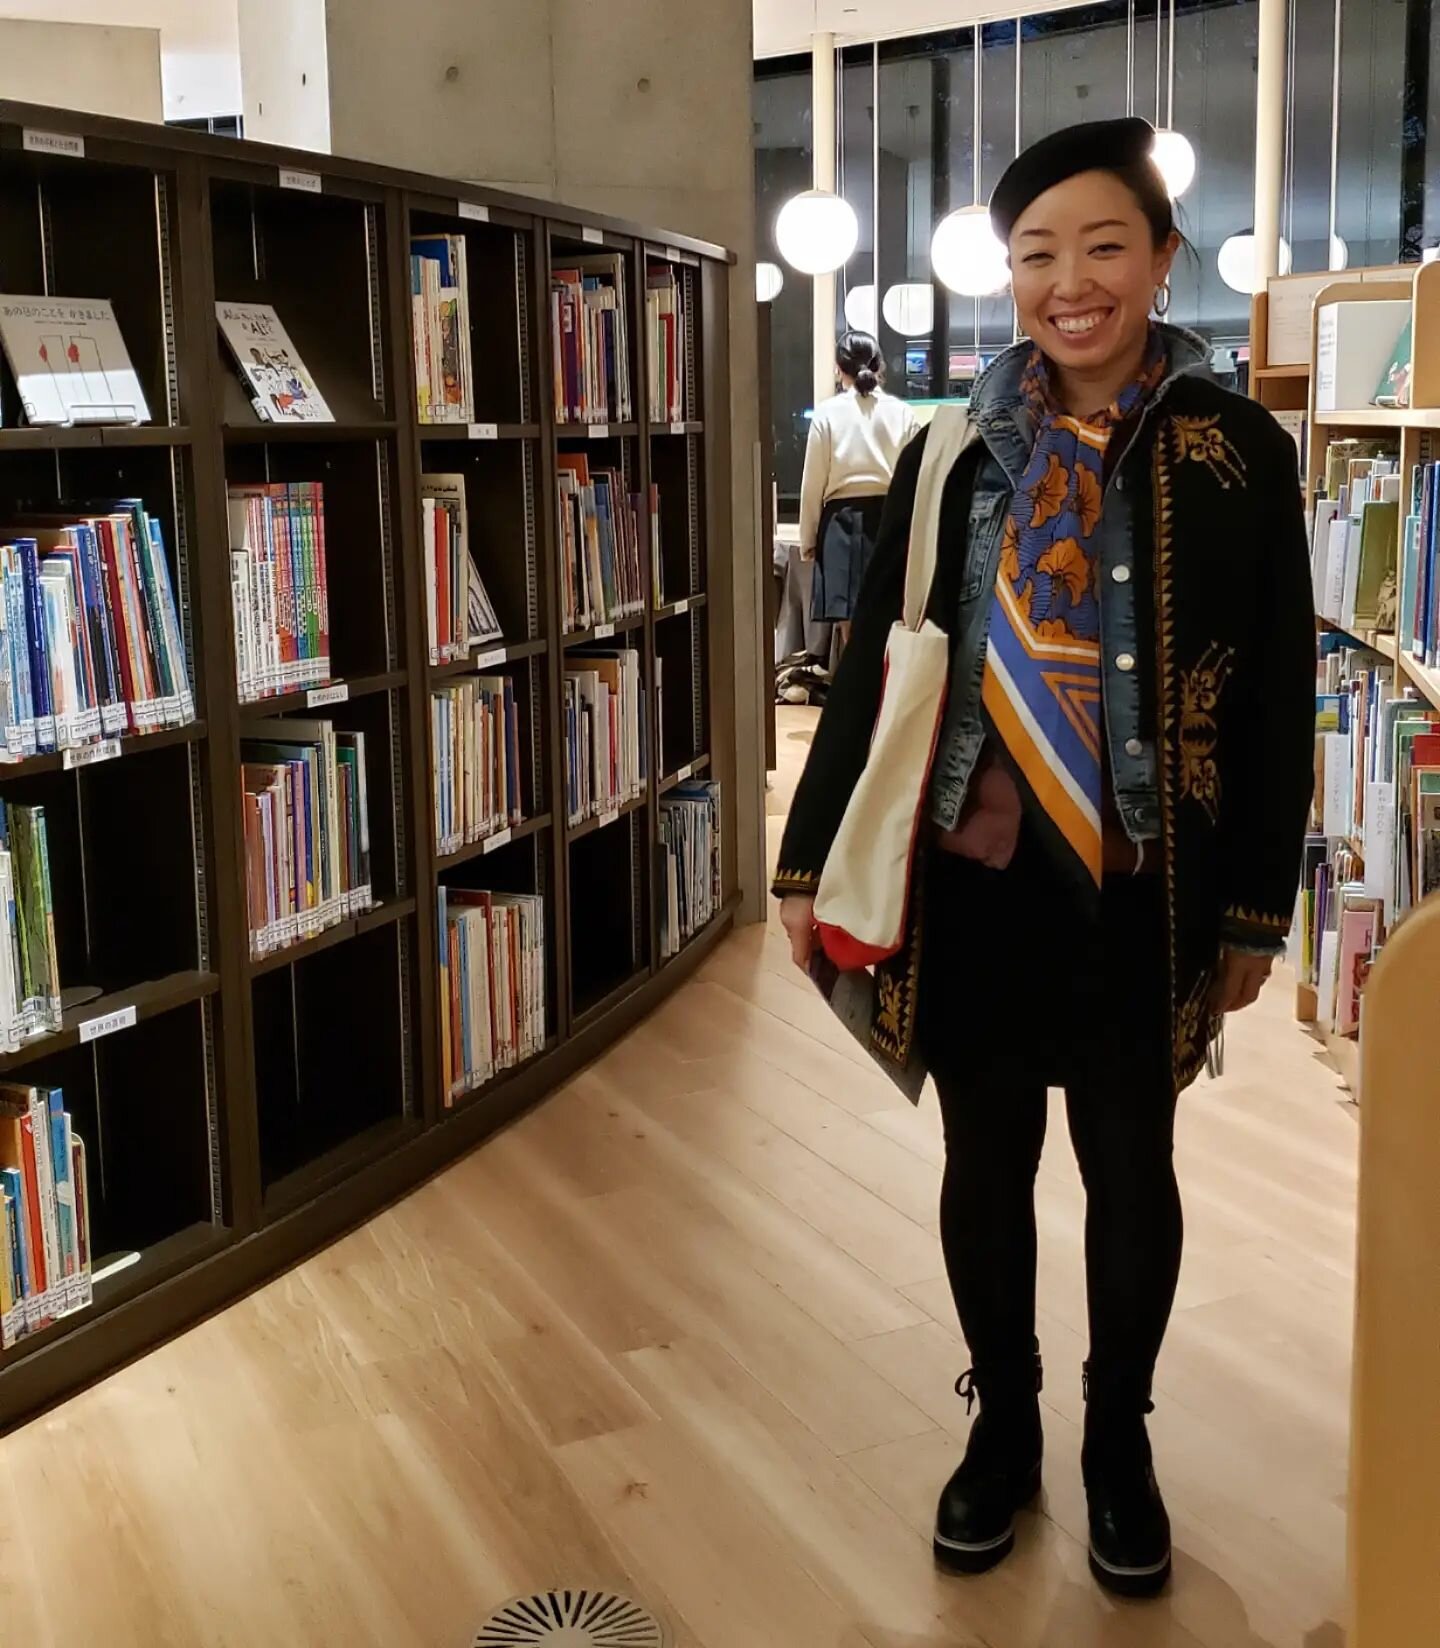 板橋区中央図書館の一角には、イタリアを拠点とするボローニャ絵本原画展に寄せられた世界各国の絵本に出会えるボローニャ絵本館があるのです📚 とってもいい図書館です🌲絵本好きにオススメ🥰
 
 
In Itabashi, Tokyo, there's a library within a library dedicated to children's books gifted from the Bologna Children's Book Fair. I wanted to see it an